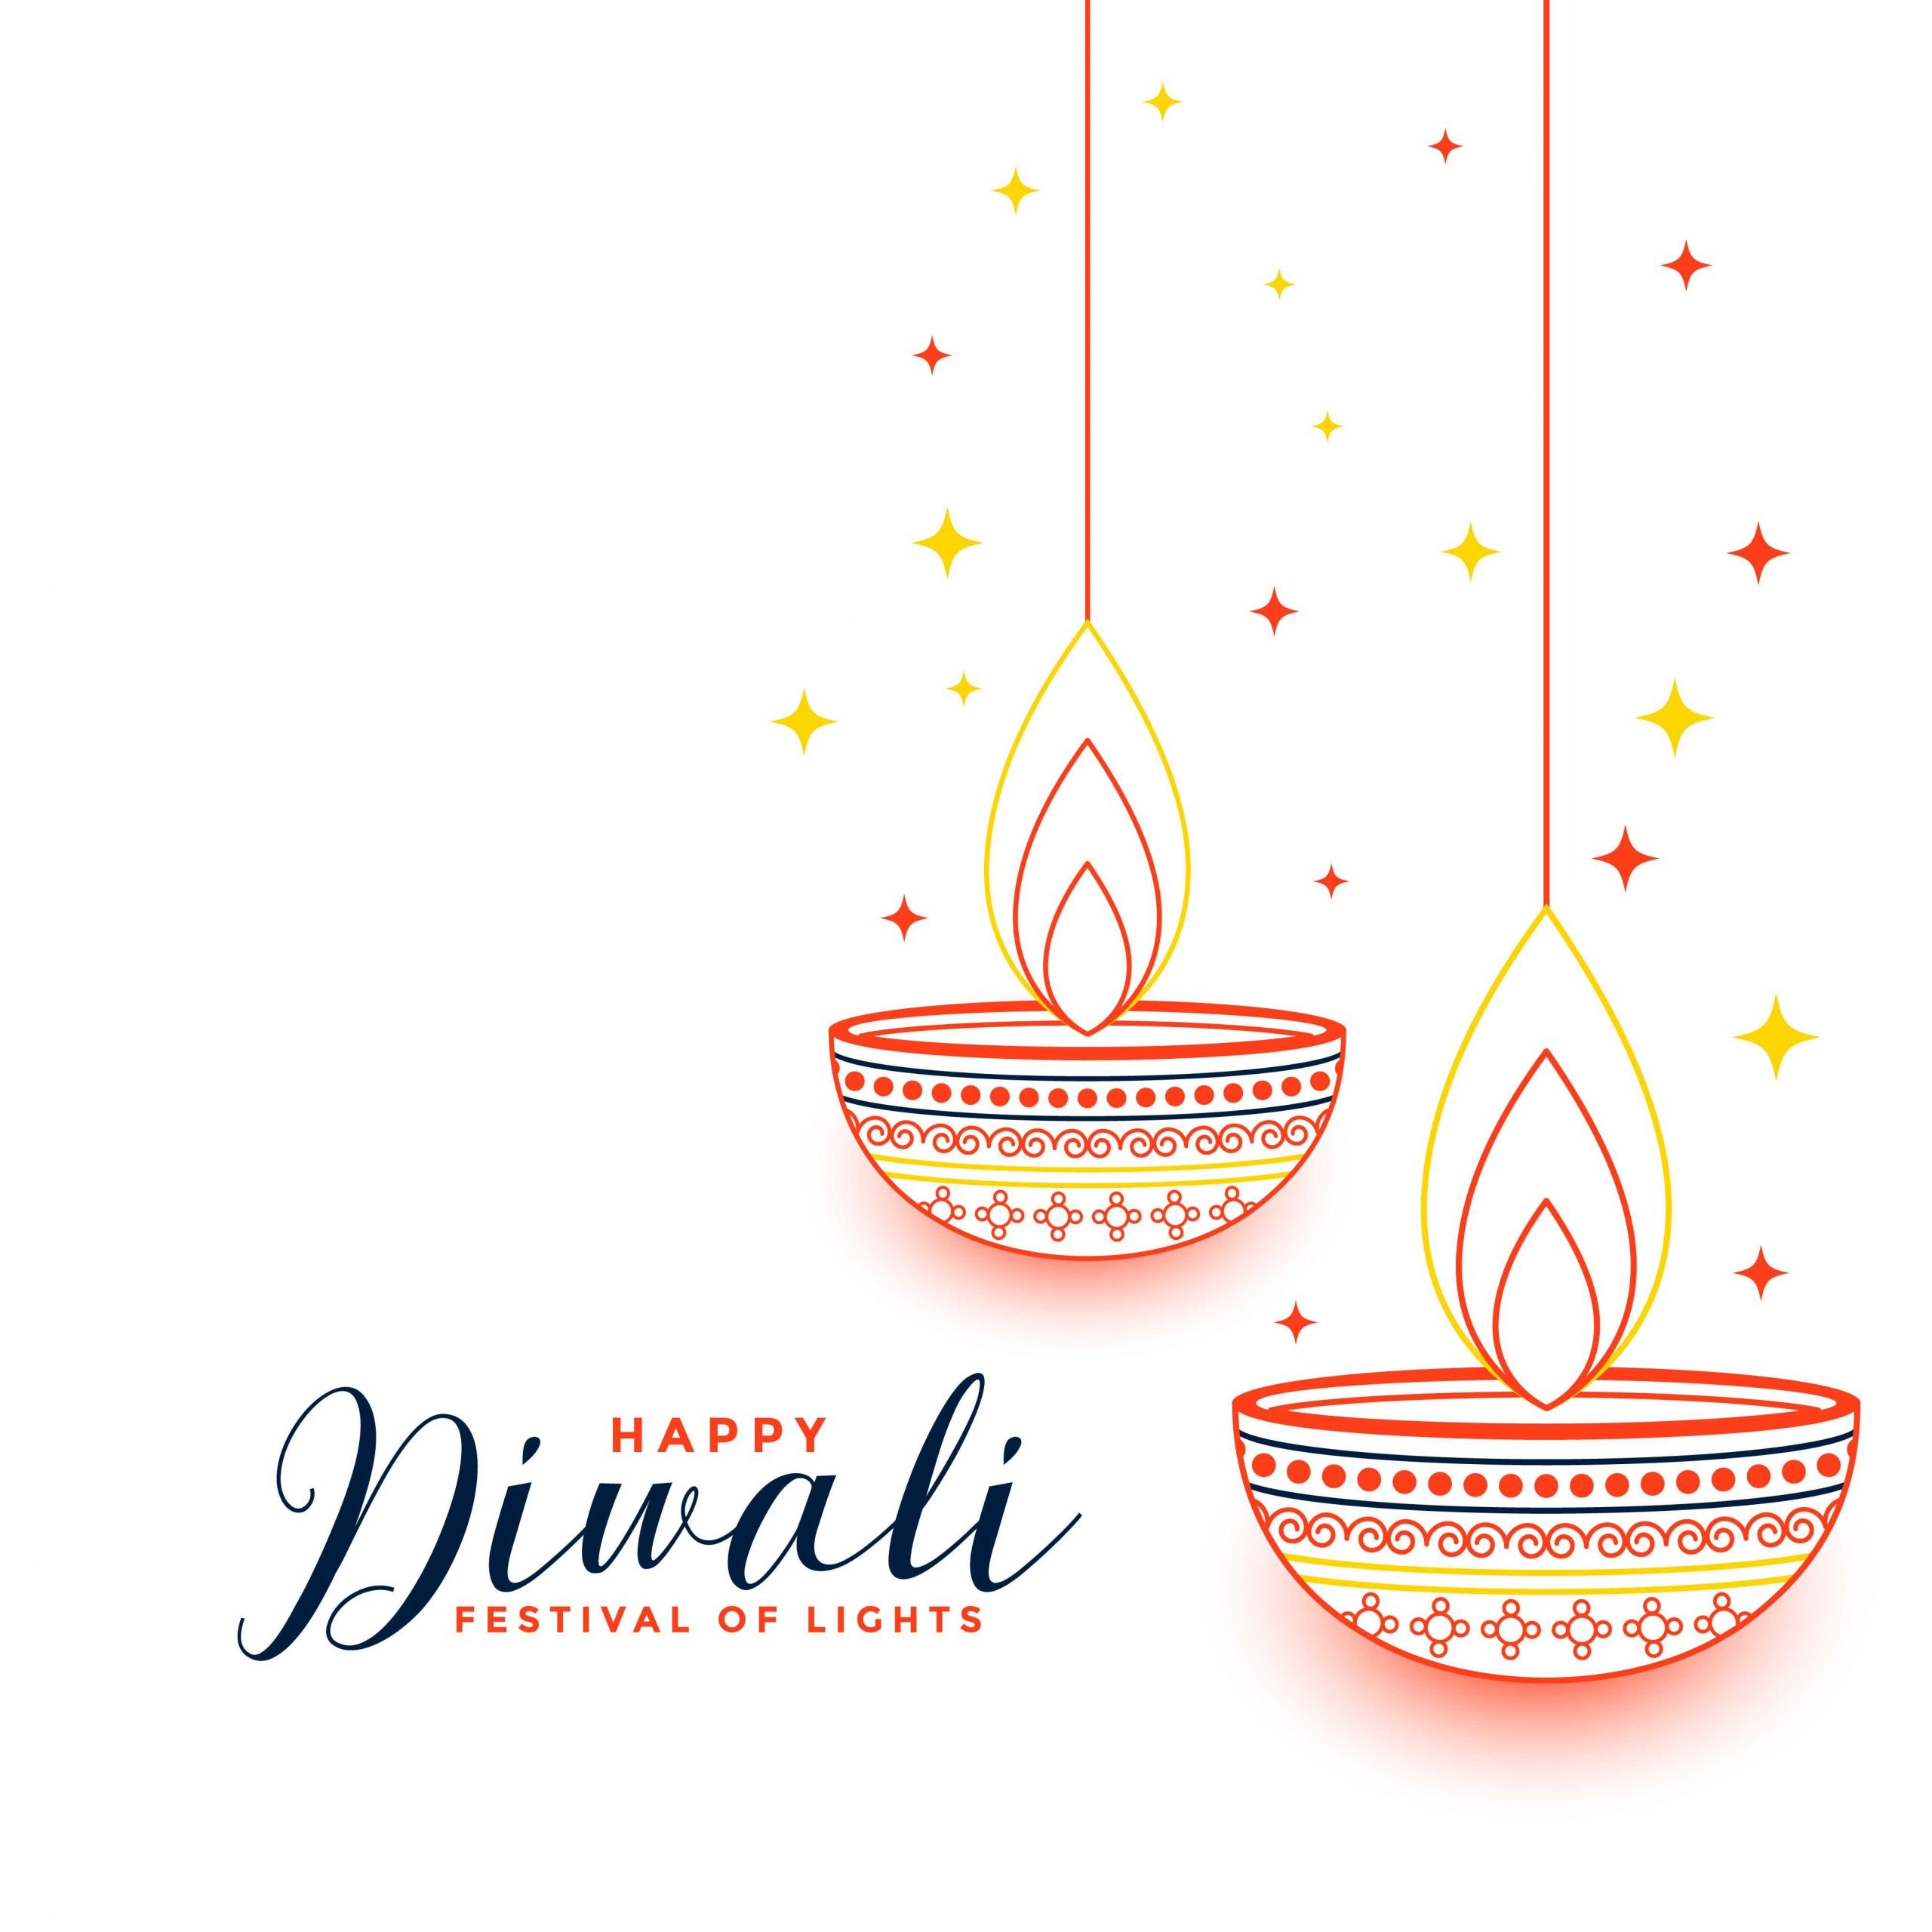 Happy Diwali pics download